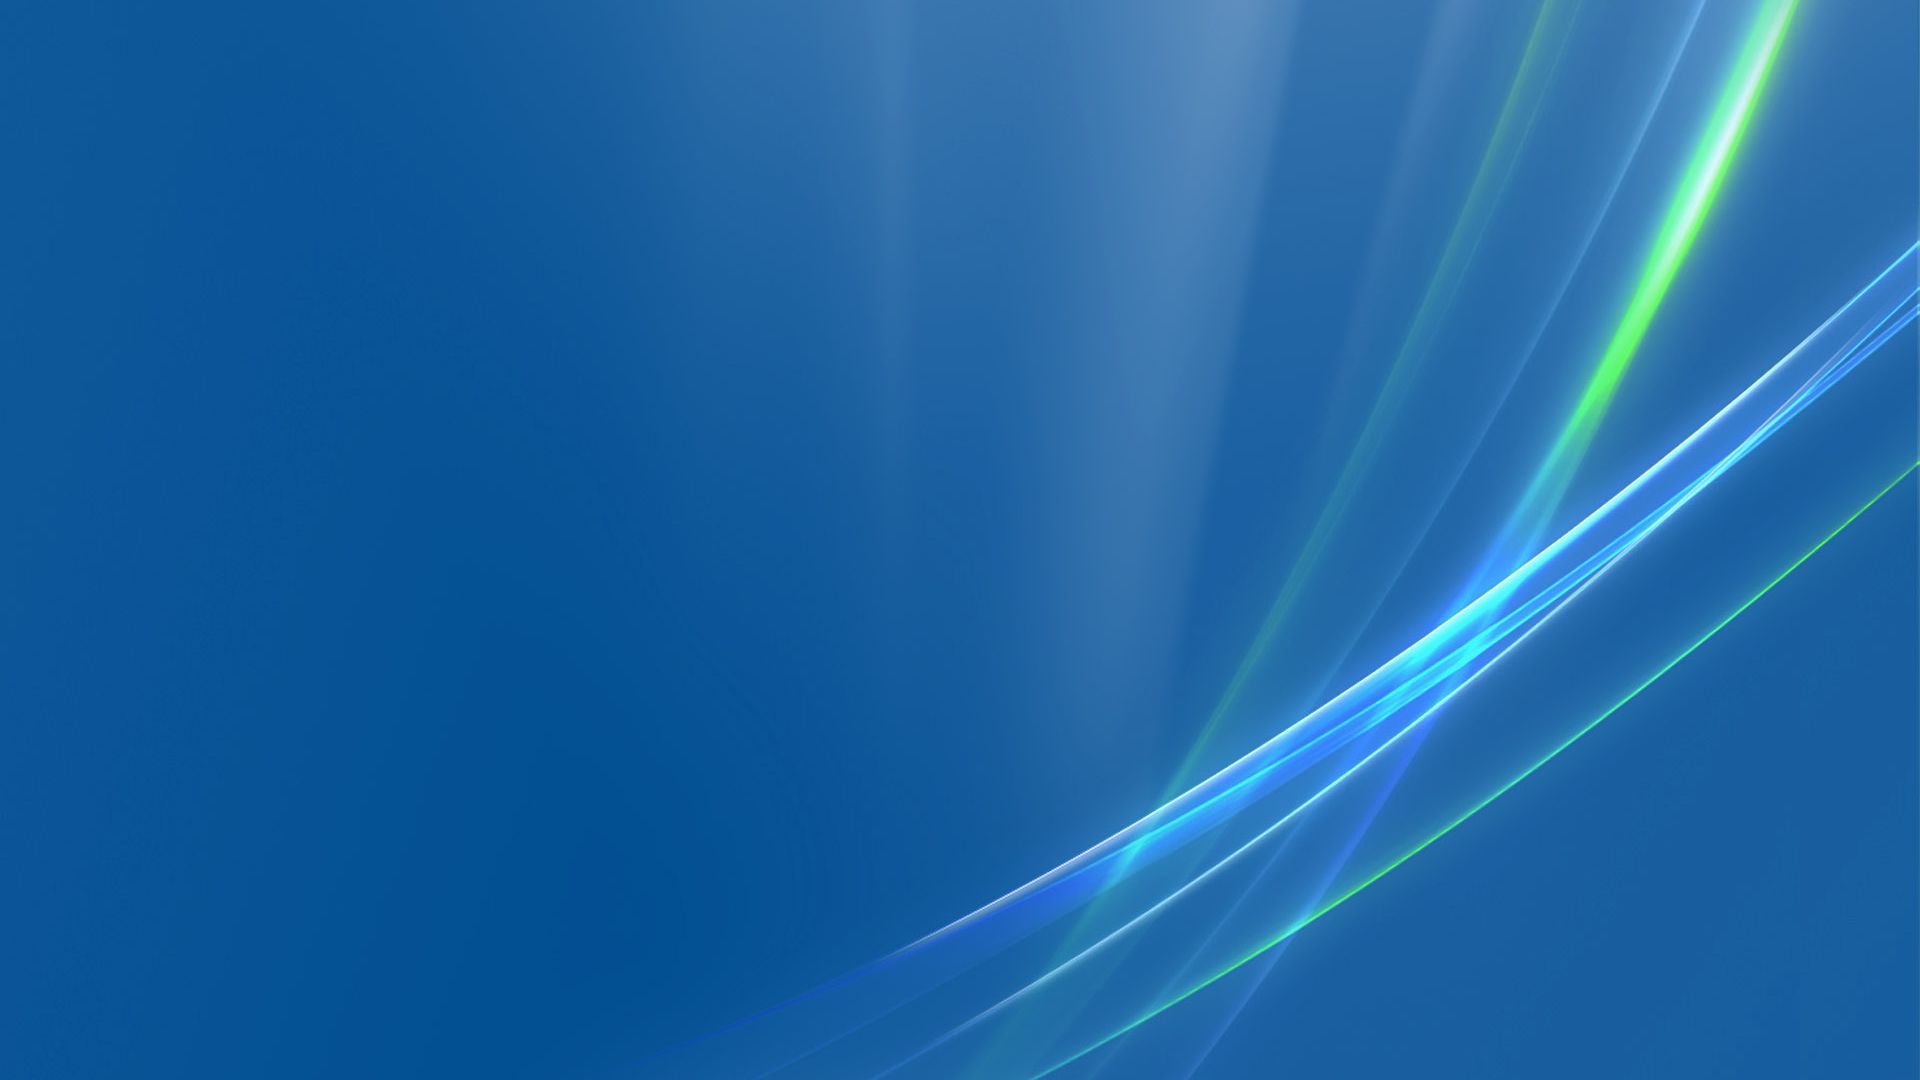 Background Windows Vista Wallpaper In 19x1080 Resolution